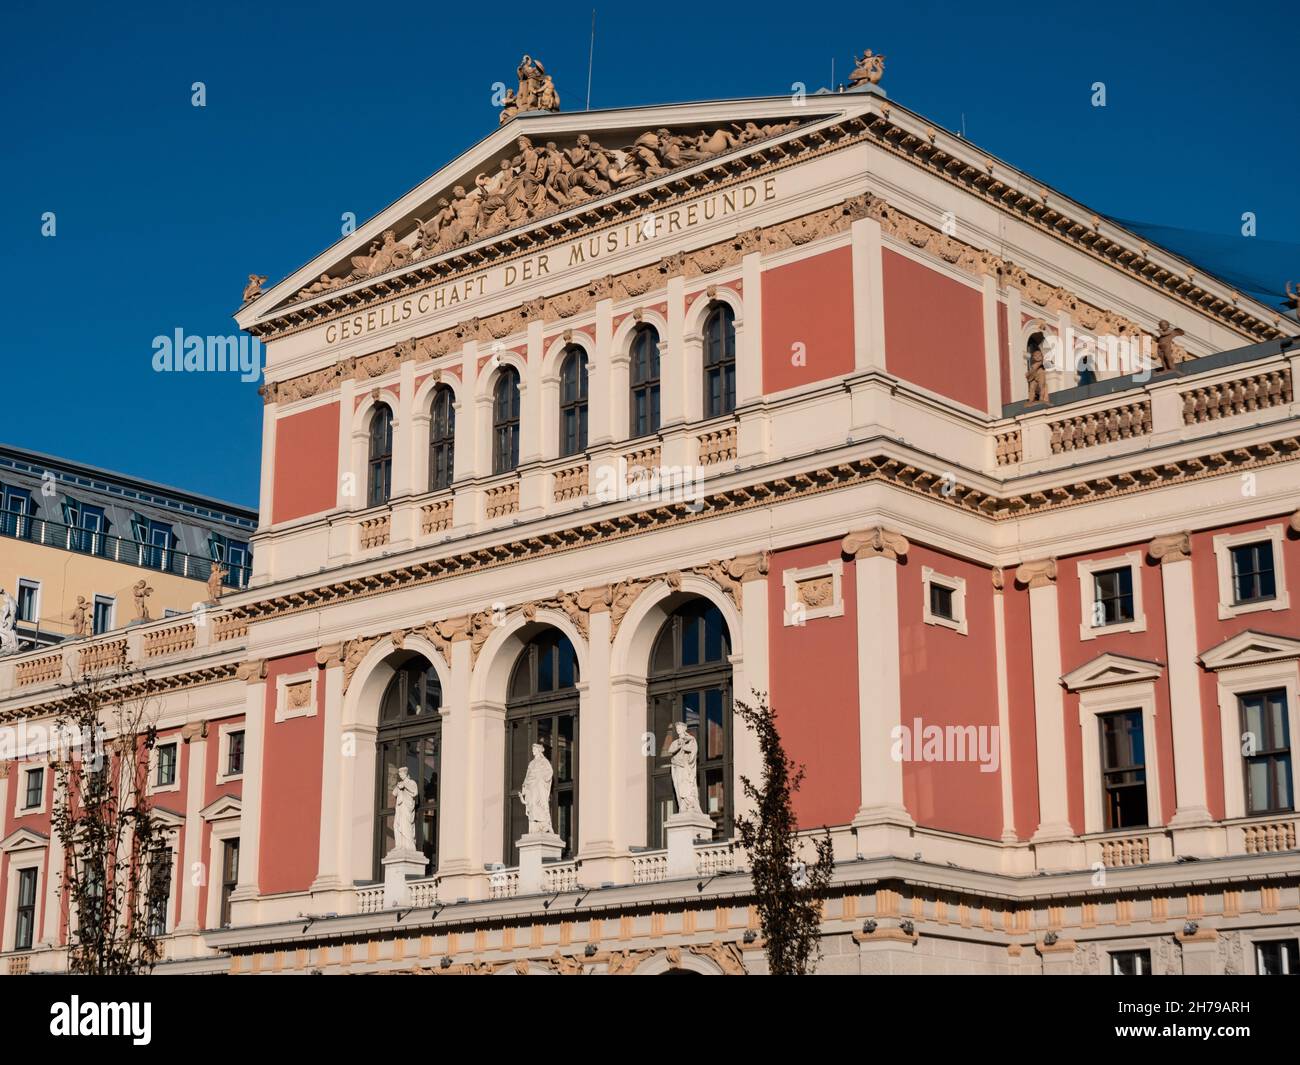 Wiener Musikverein Concert Hall run by the Gesellschaft der Musikfreunde in Vienna, Austria Stock Photo